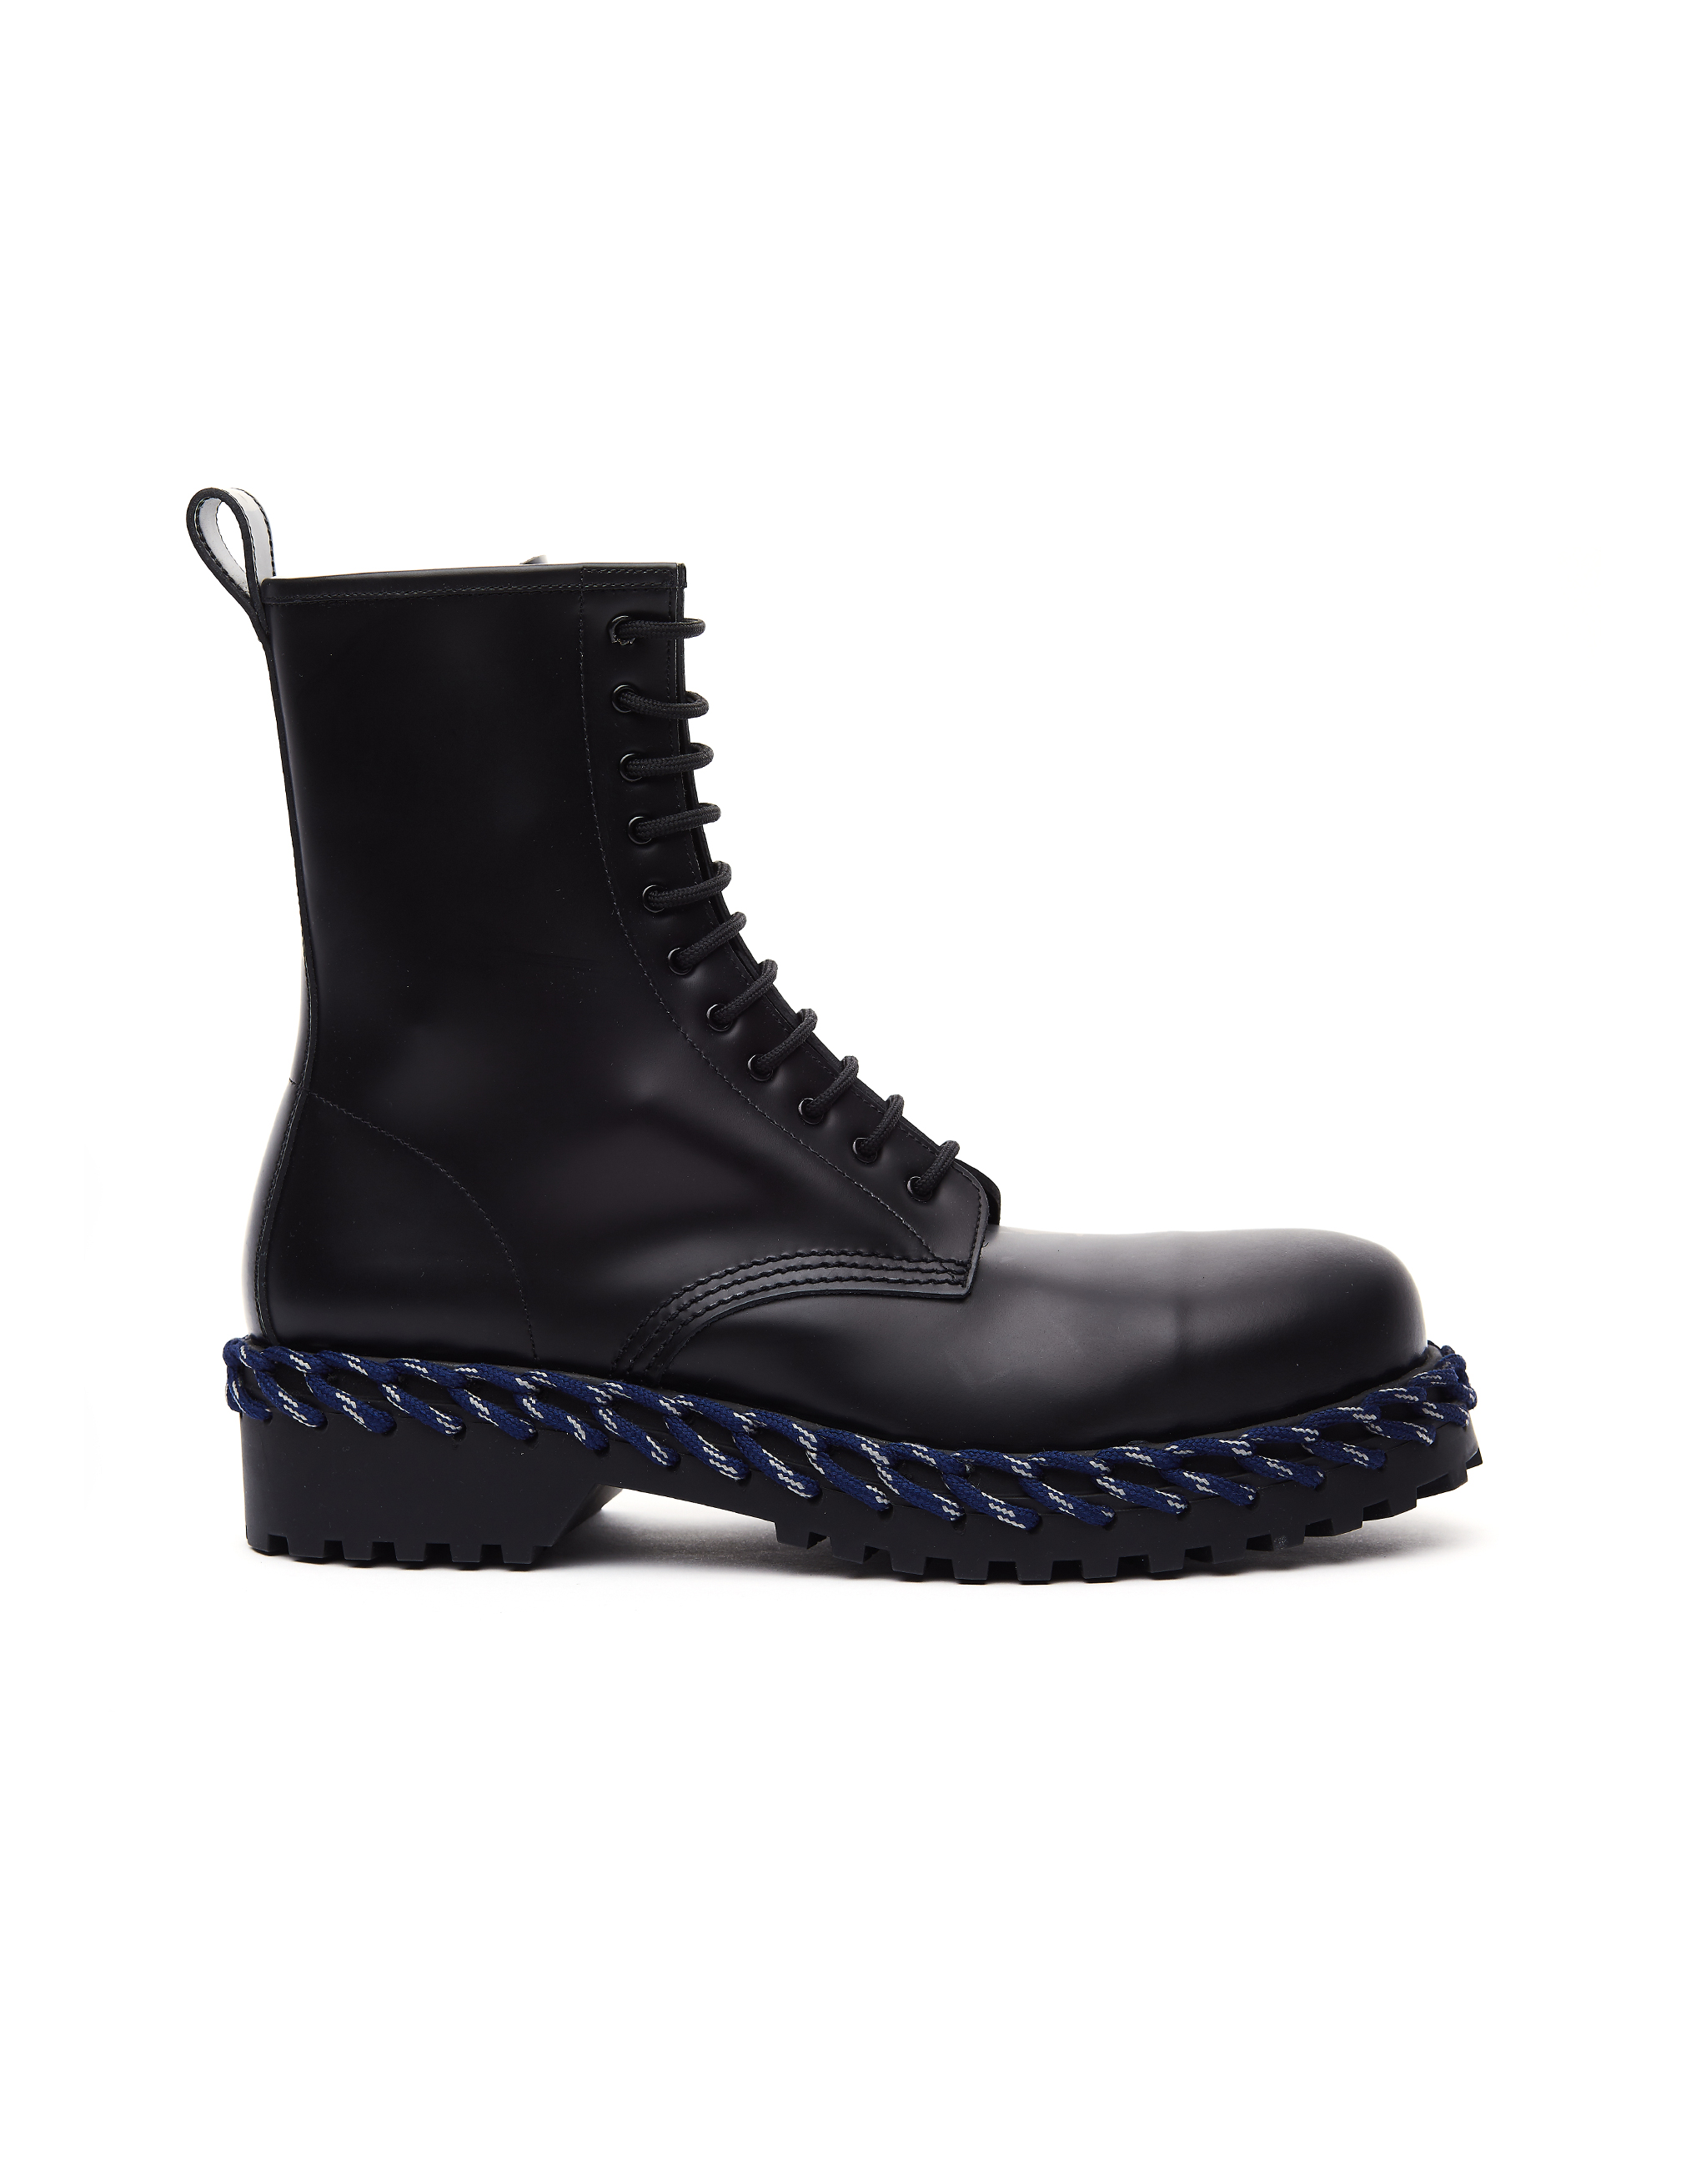 Кожаные ботинки с декоративной шнуровкой Balenciaga 530244/1007, размер sm;sm 530244/1007 - фото 1